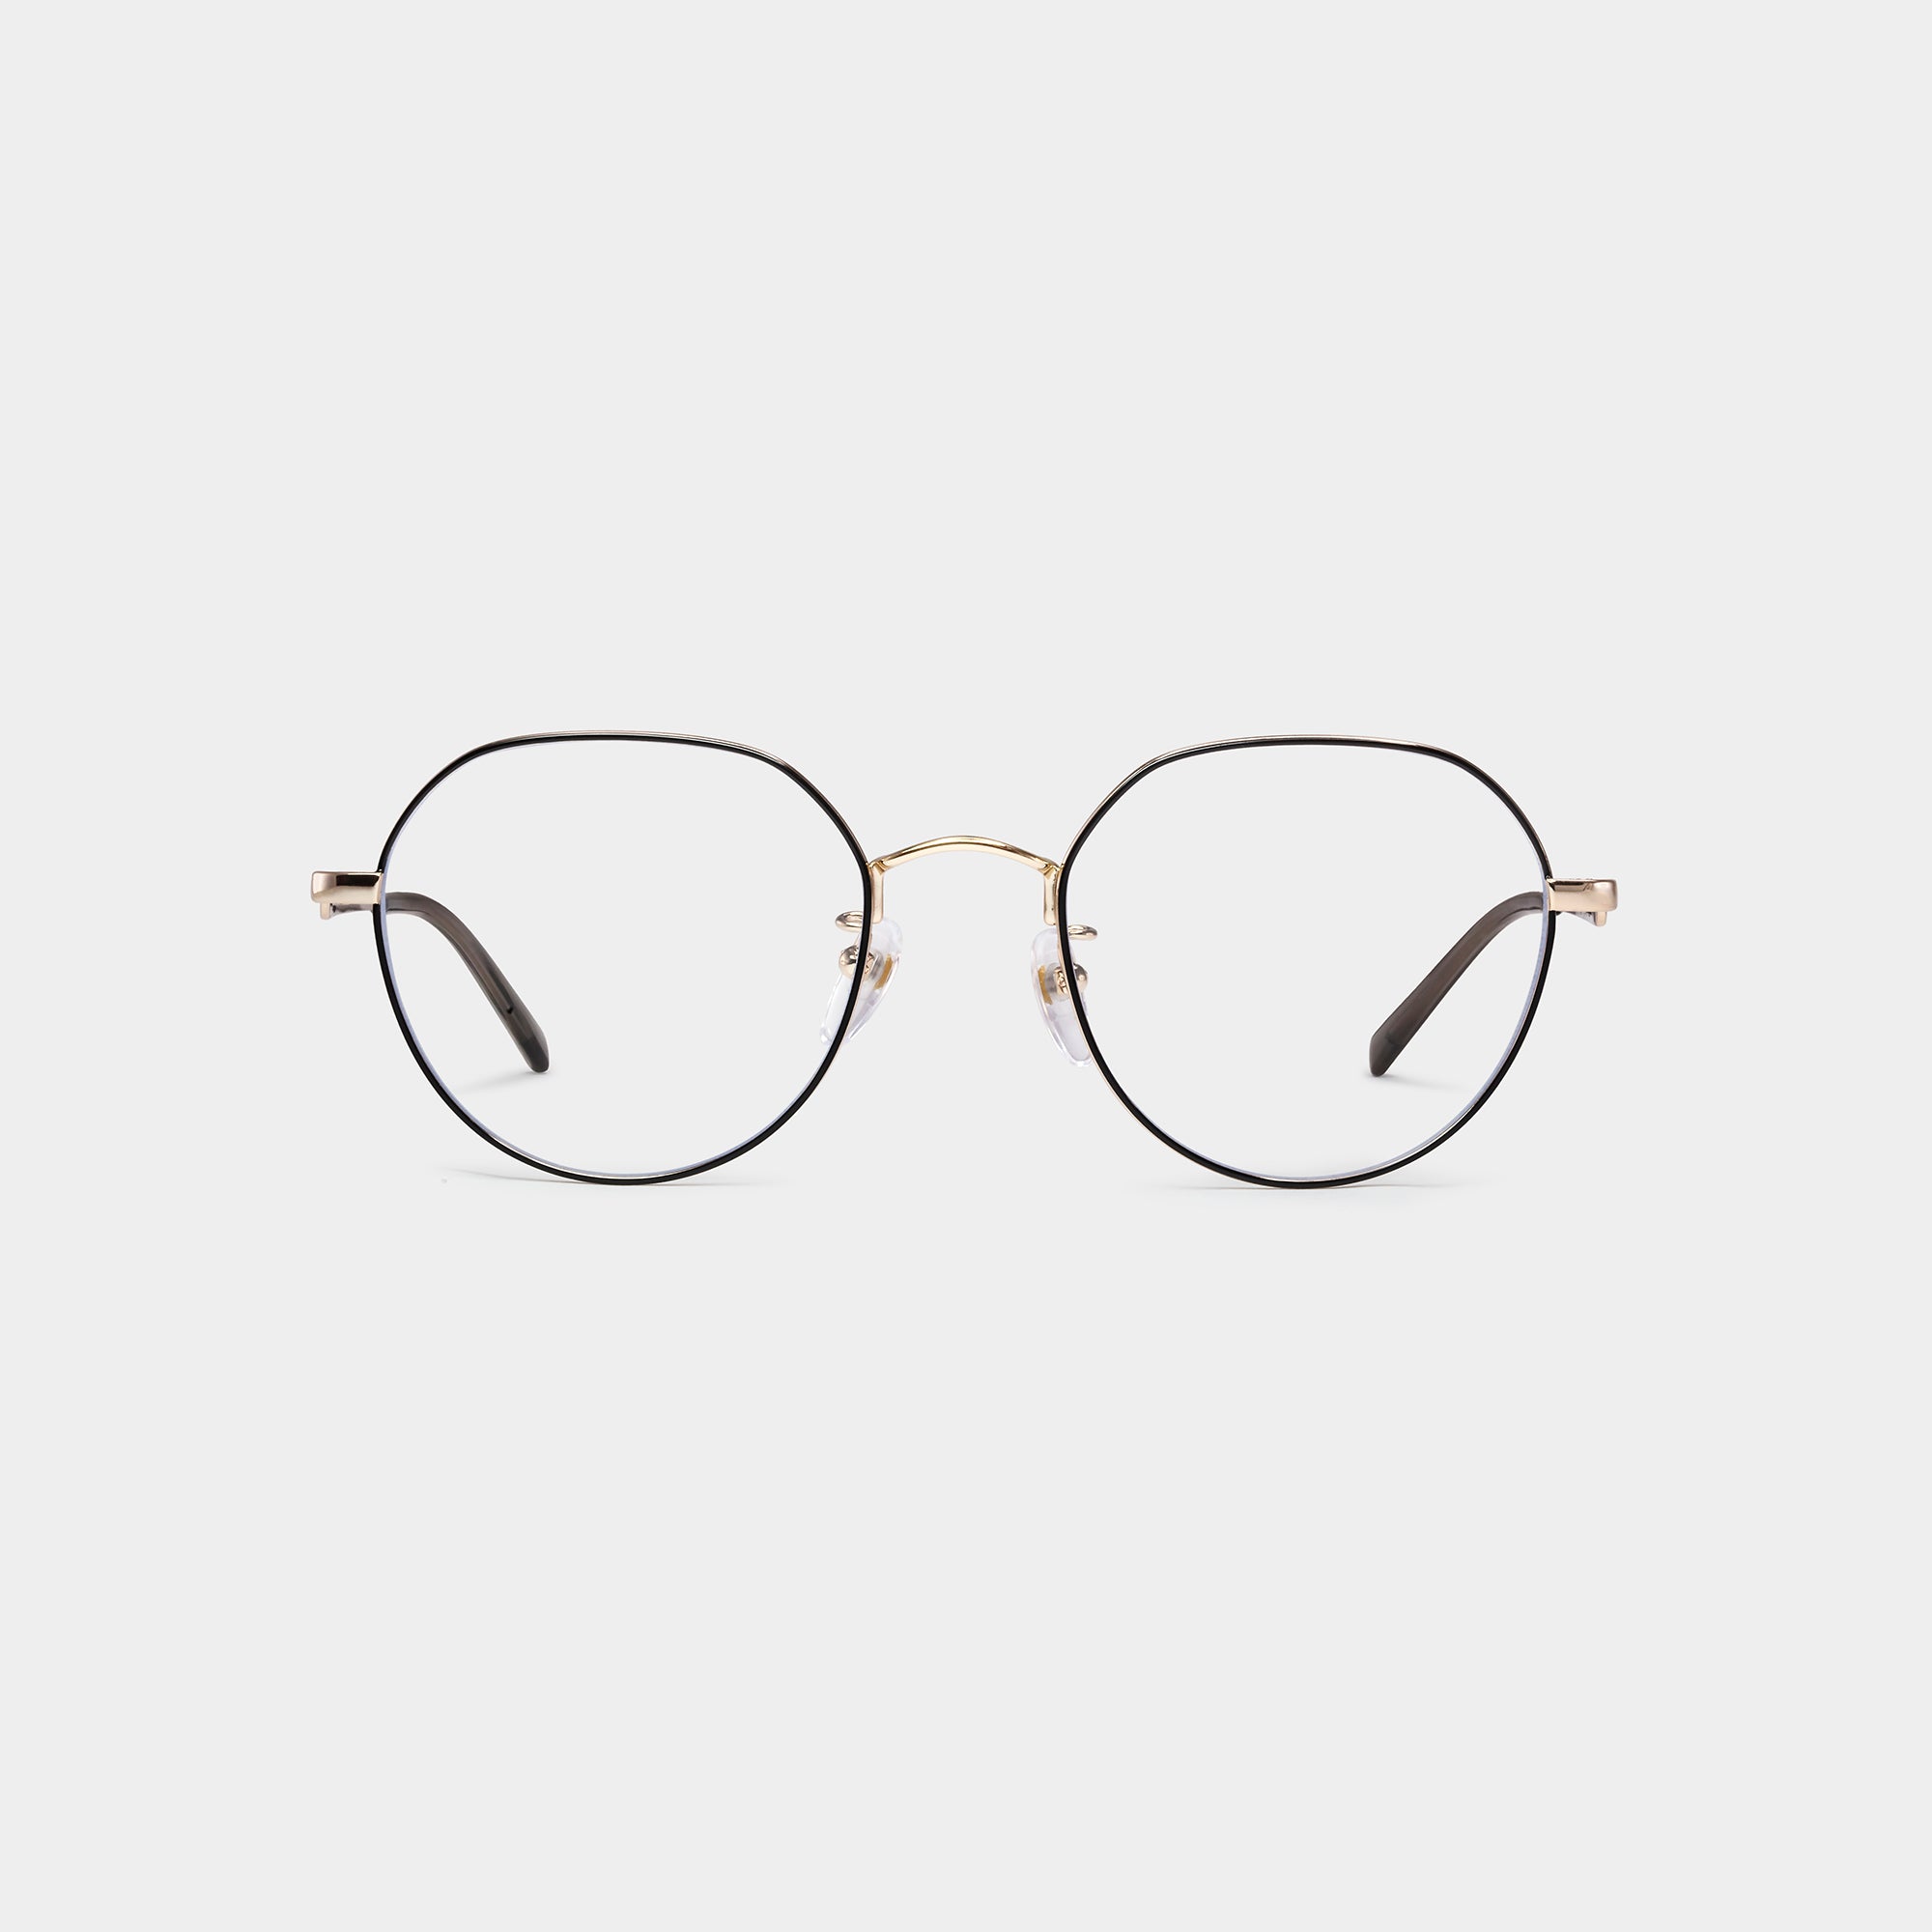 Titanium Pear Shaped Optical Glasses | JILLSTUART Eyewear